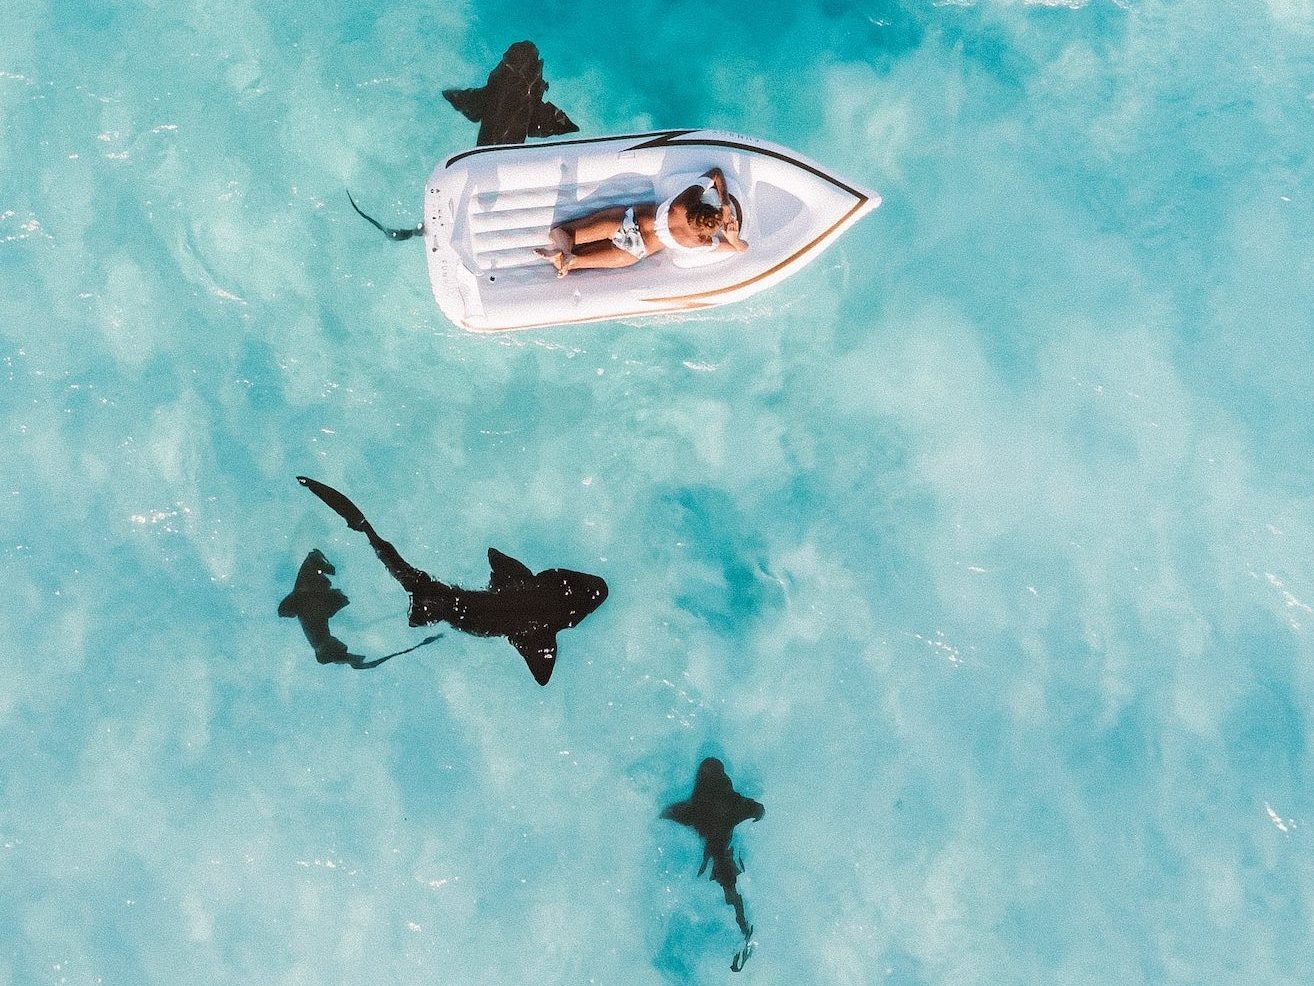 Tiburones nadando en una de las mejores islas de las Bahamas. Encima una mujer descansa en una lancha neumática.